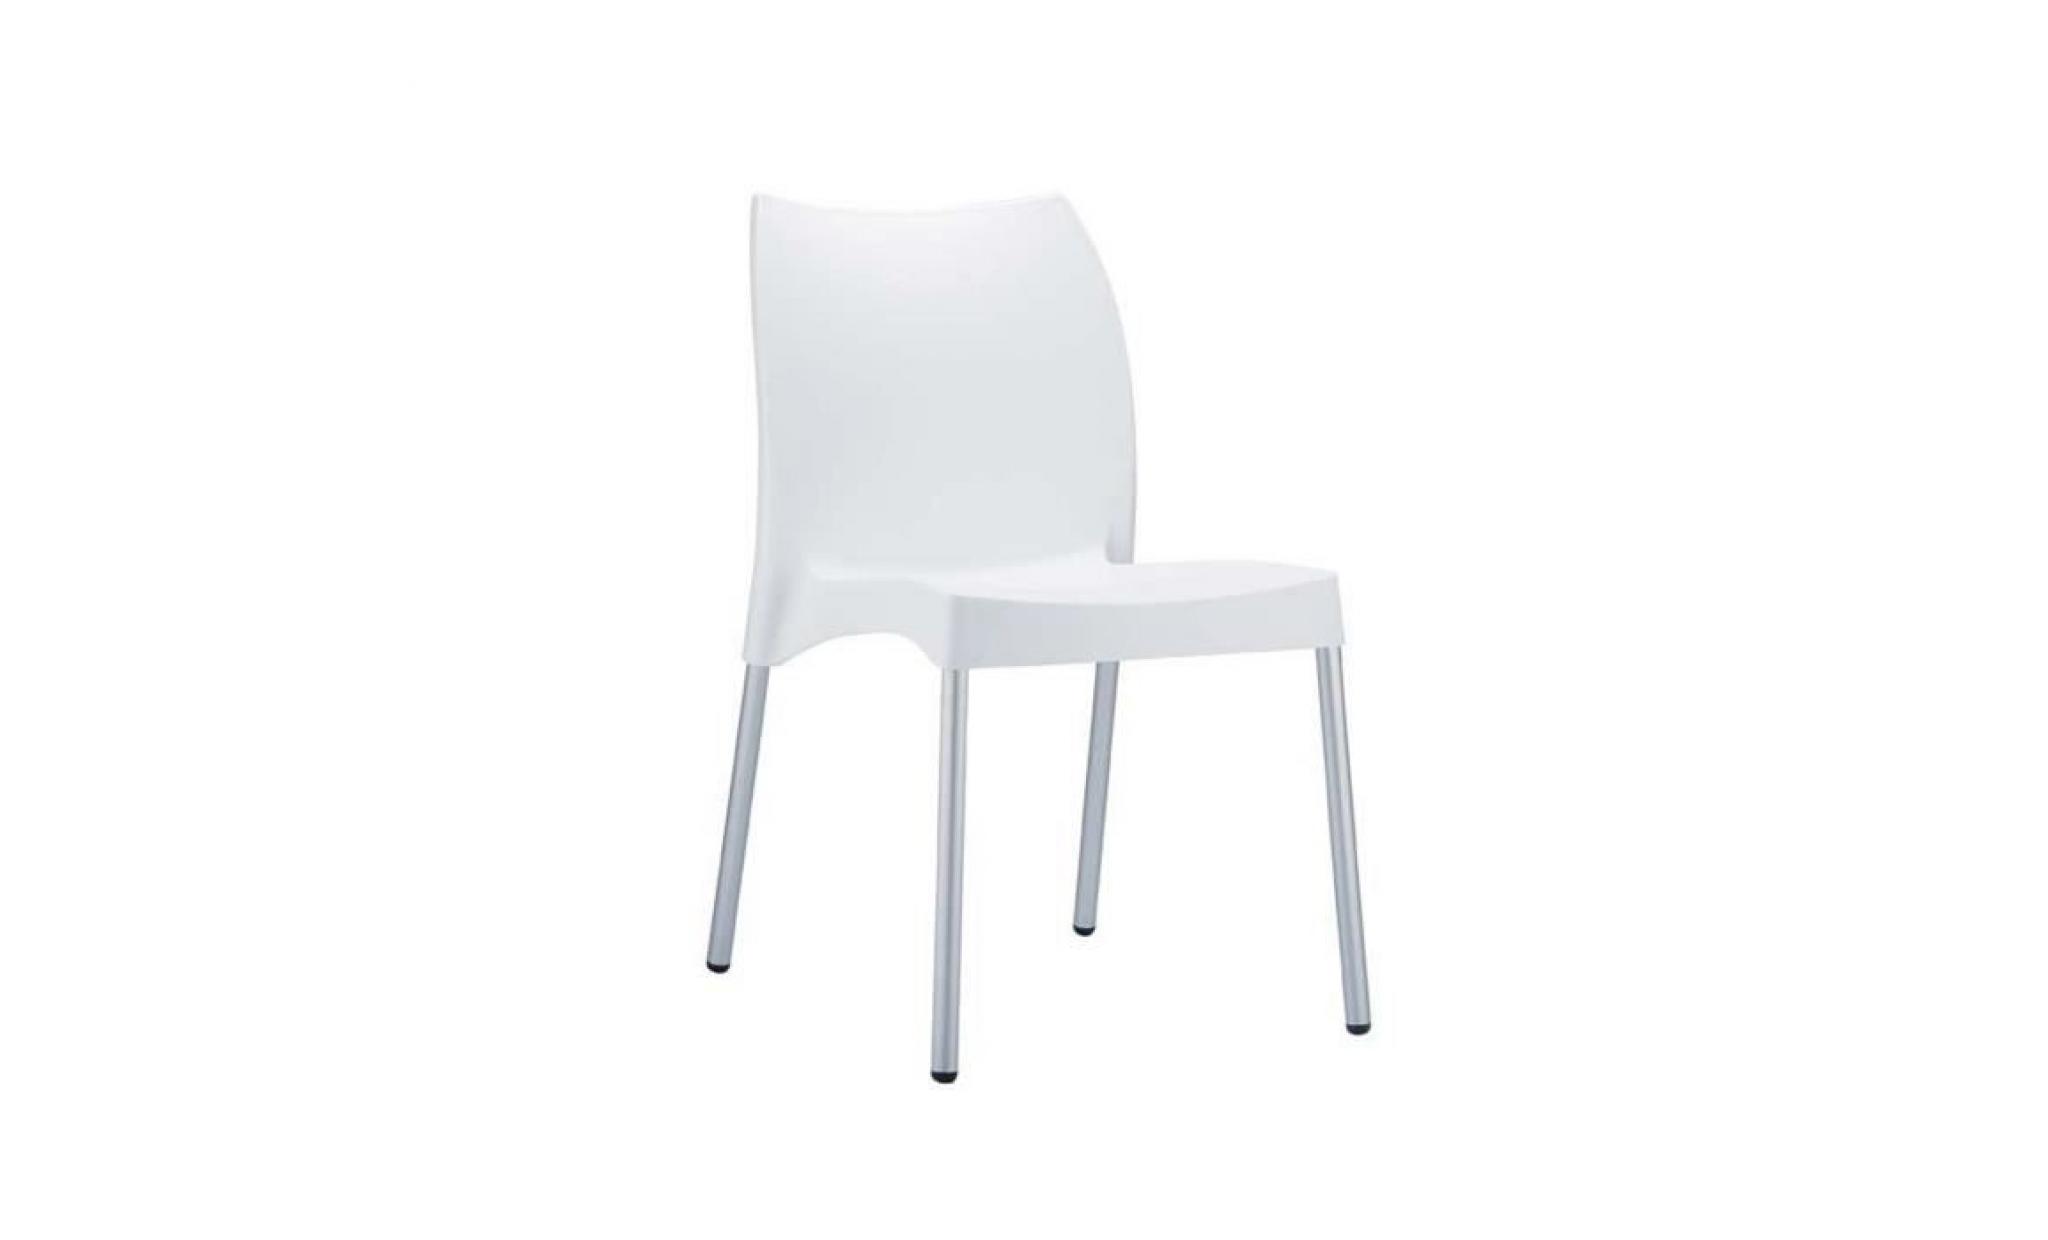 Chaise de jardin avec siège en plastique blanc - 80 x 44 x 53 cm 